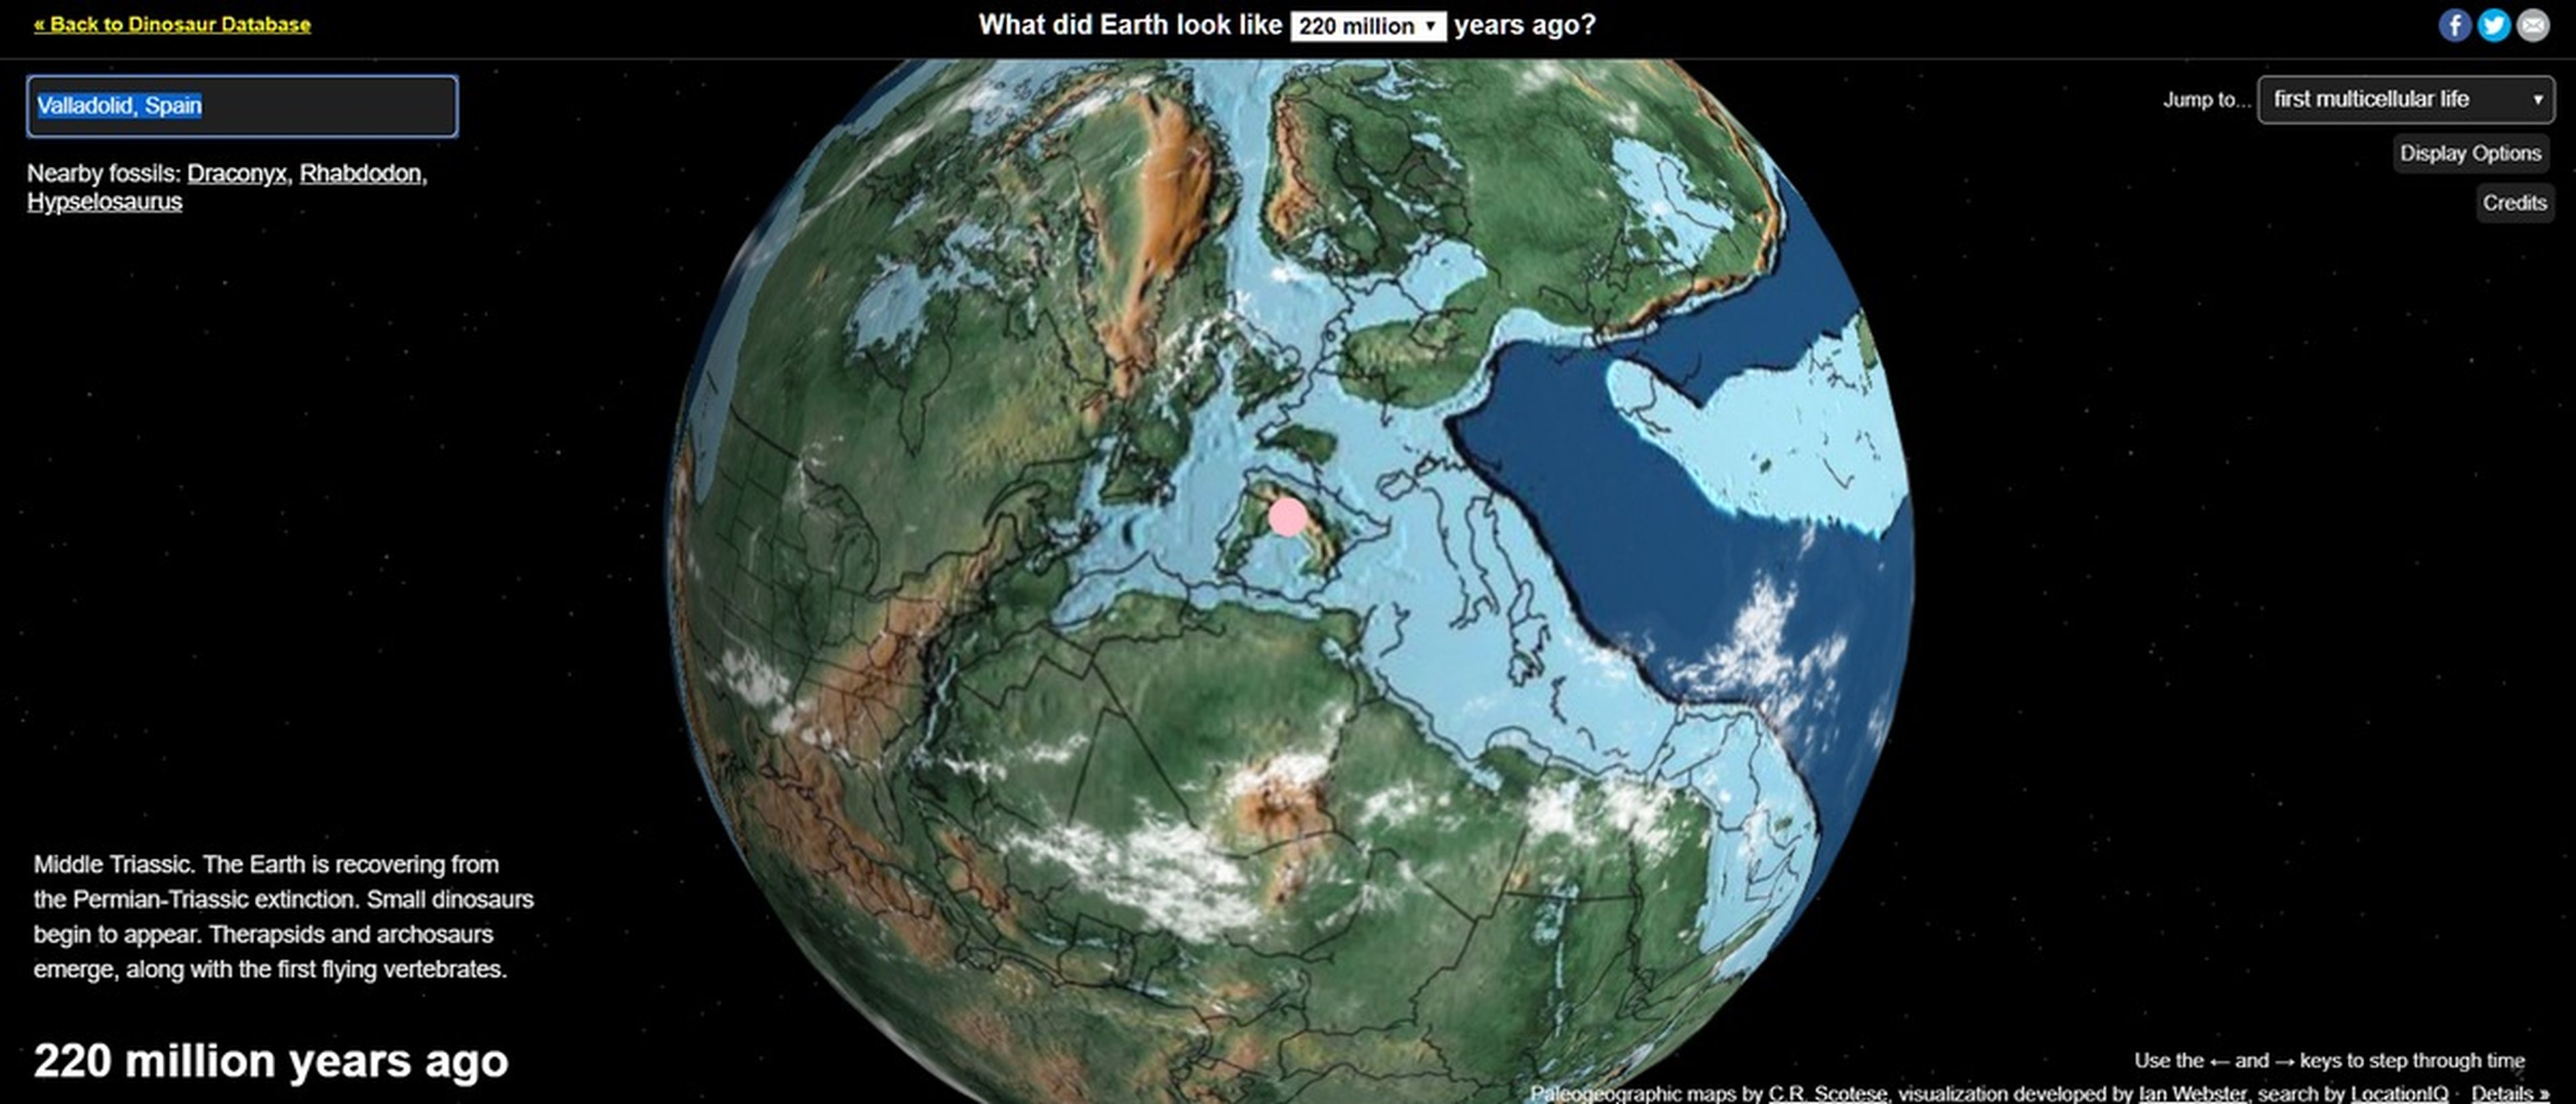 ¿Dónde estaba tu casa hace 750 millones de años? En este mapa interactivo puedes verlo